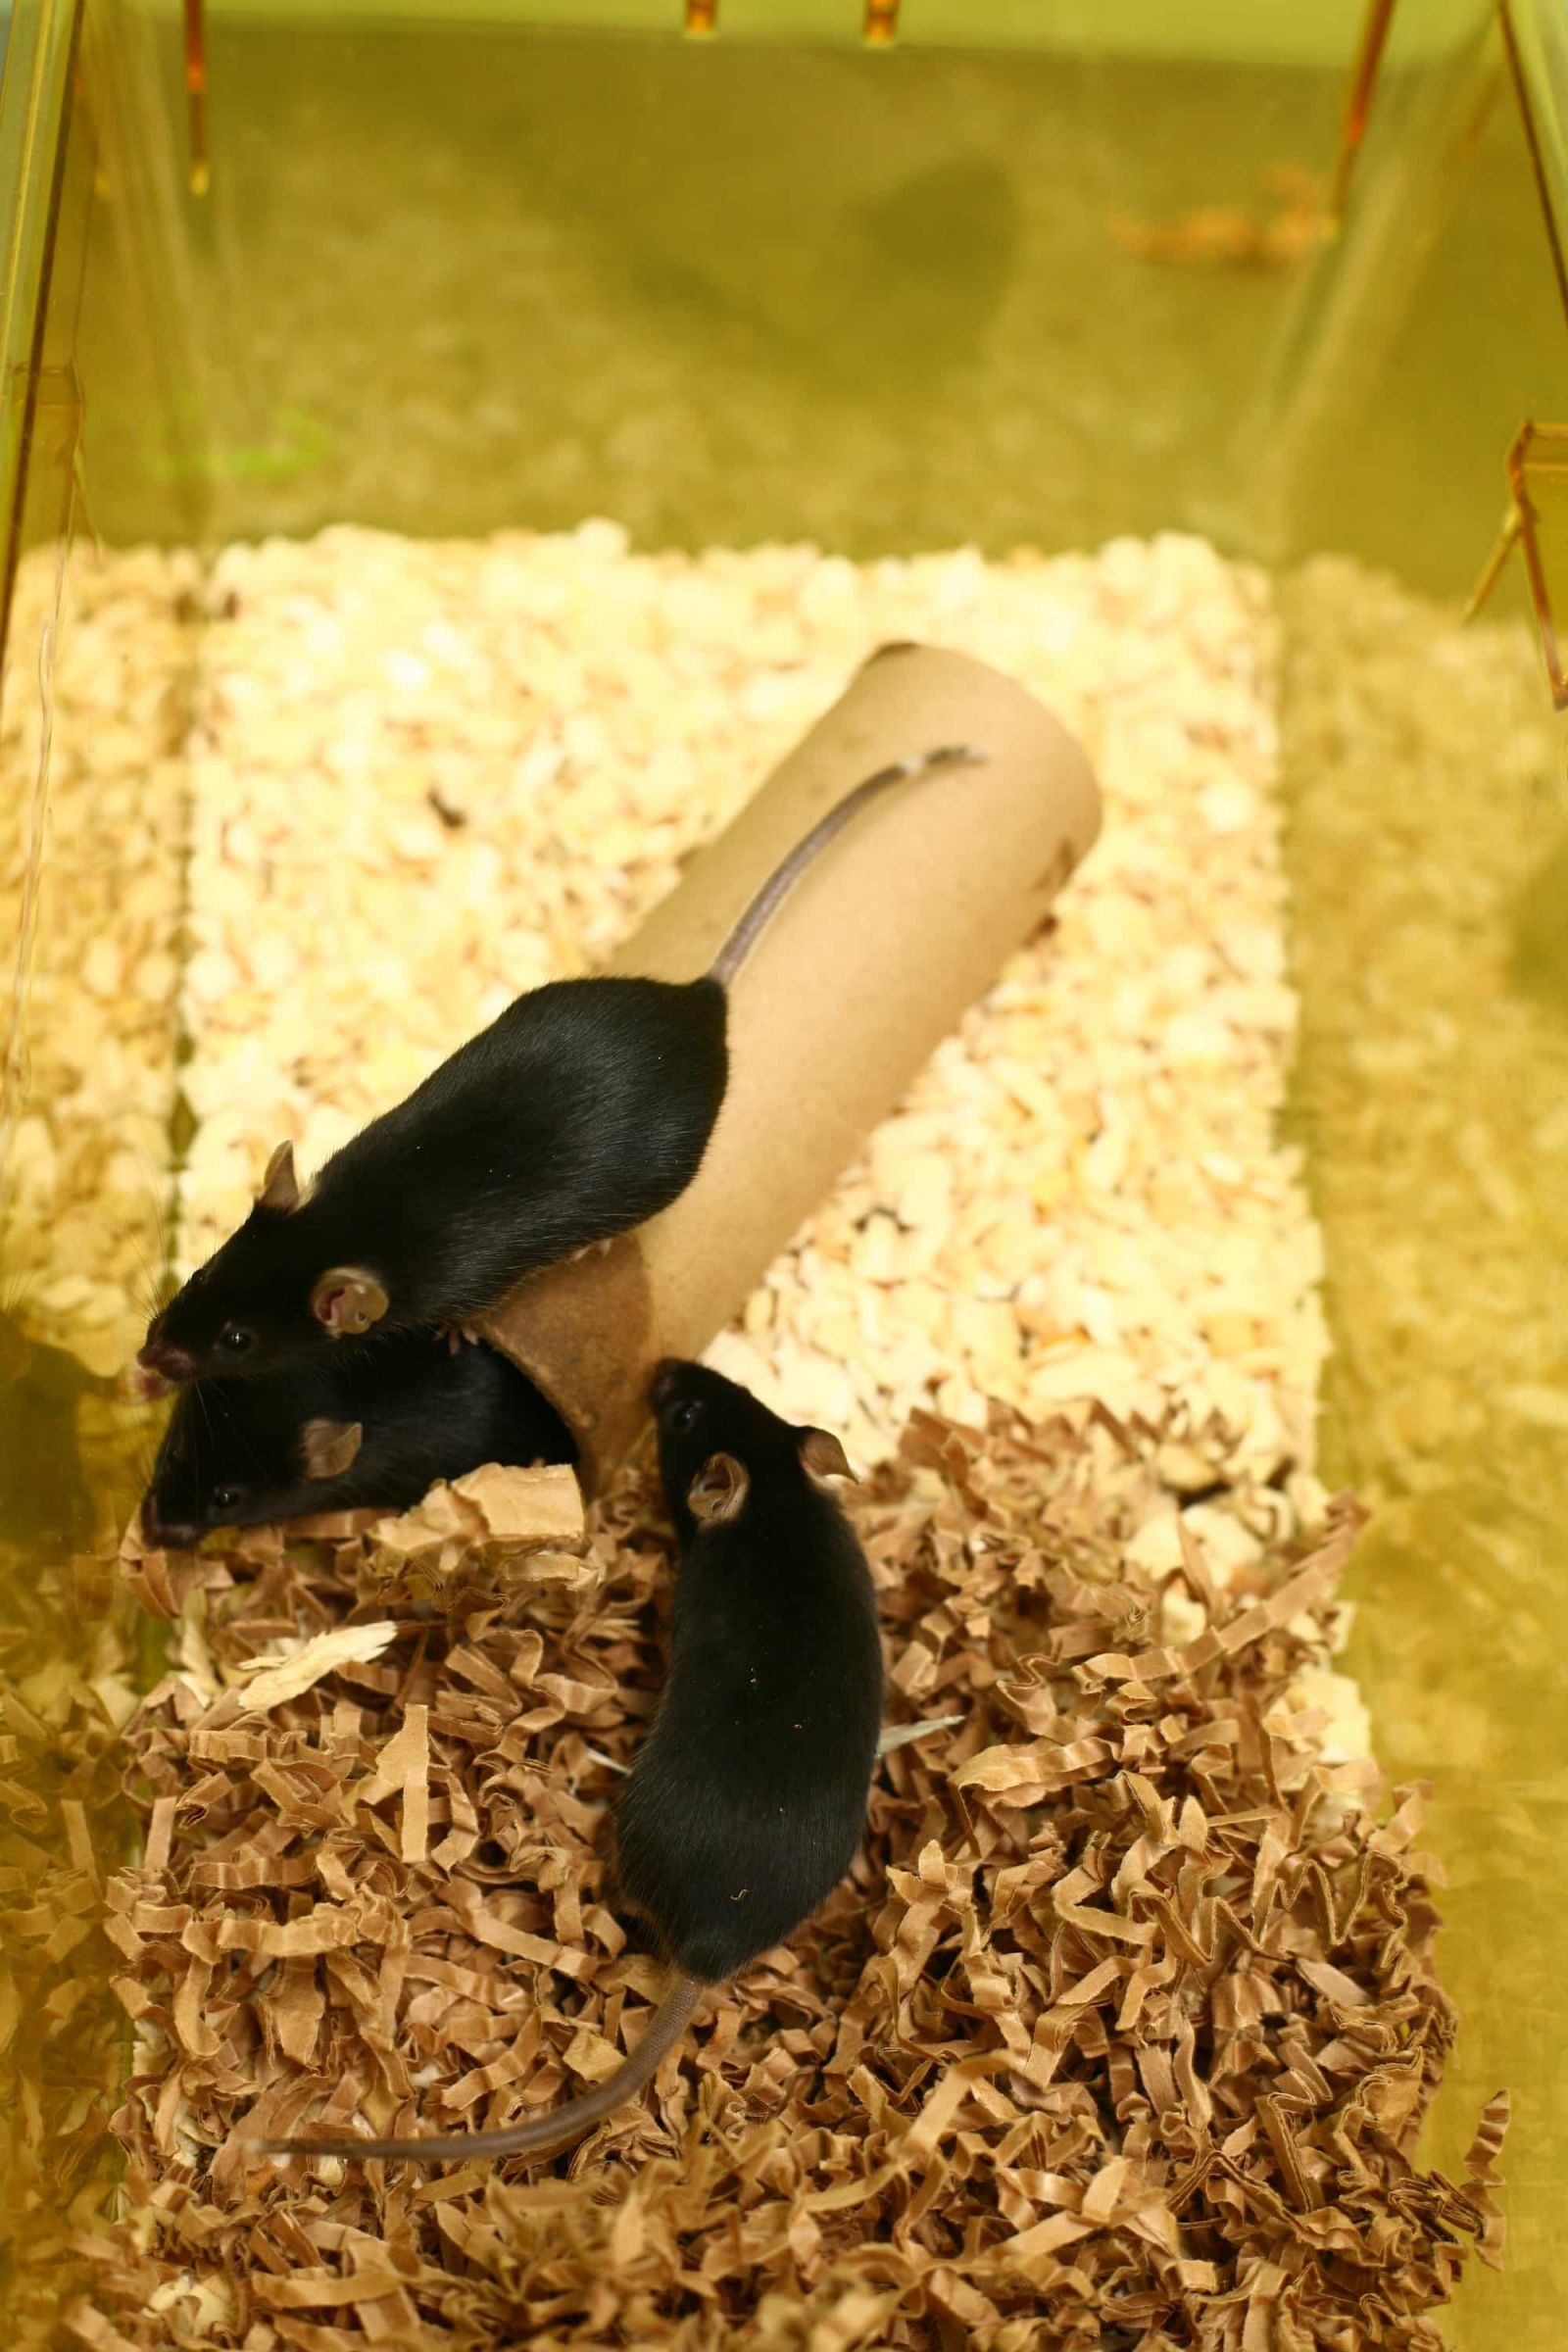 Several black mice